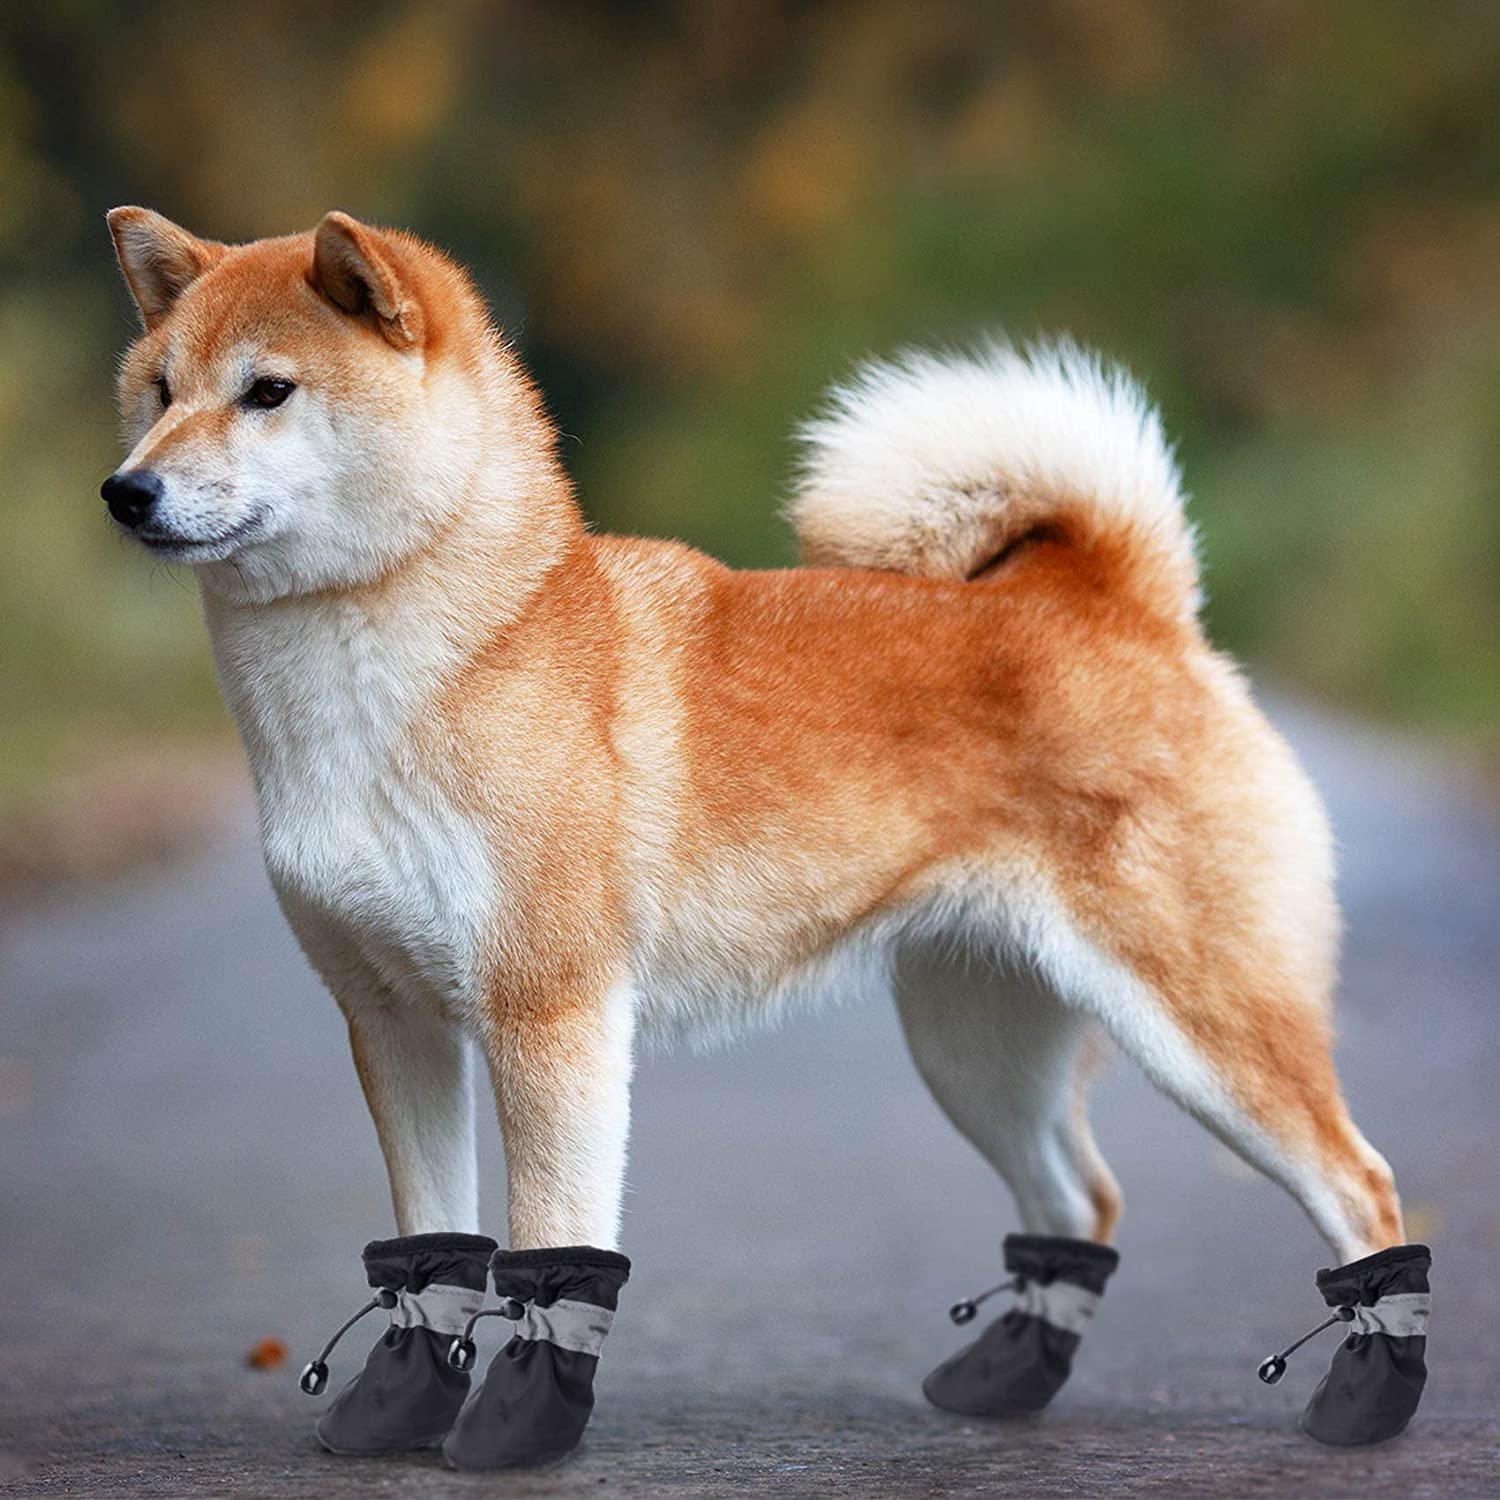 اجتناب از سرمازدگی: به دلیل دمای پایین در زمستان، یخ زدن پای سگ آسان است. پوشیدن کفش می تواند شما را بدون آسیب رساندن به پاهایتان گرم نگه دارد.